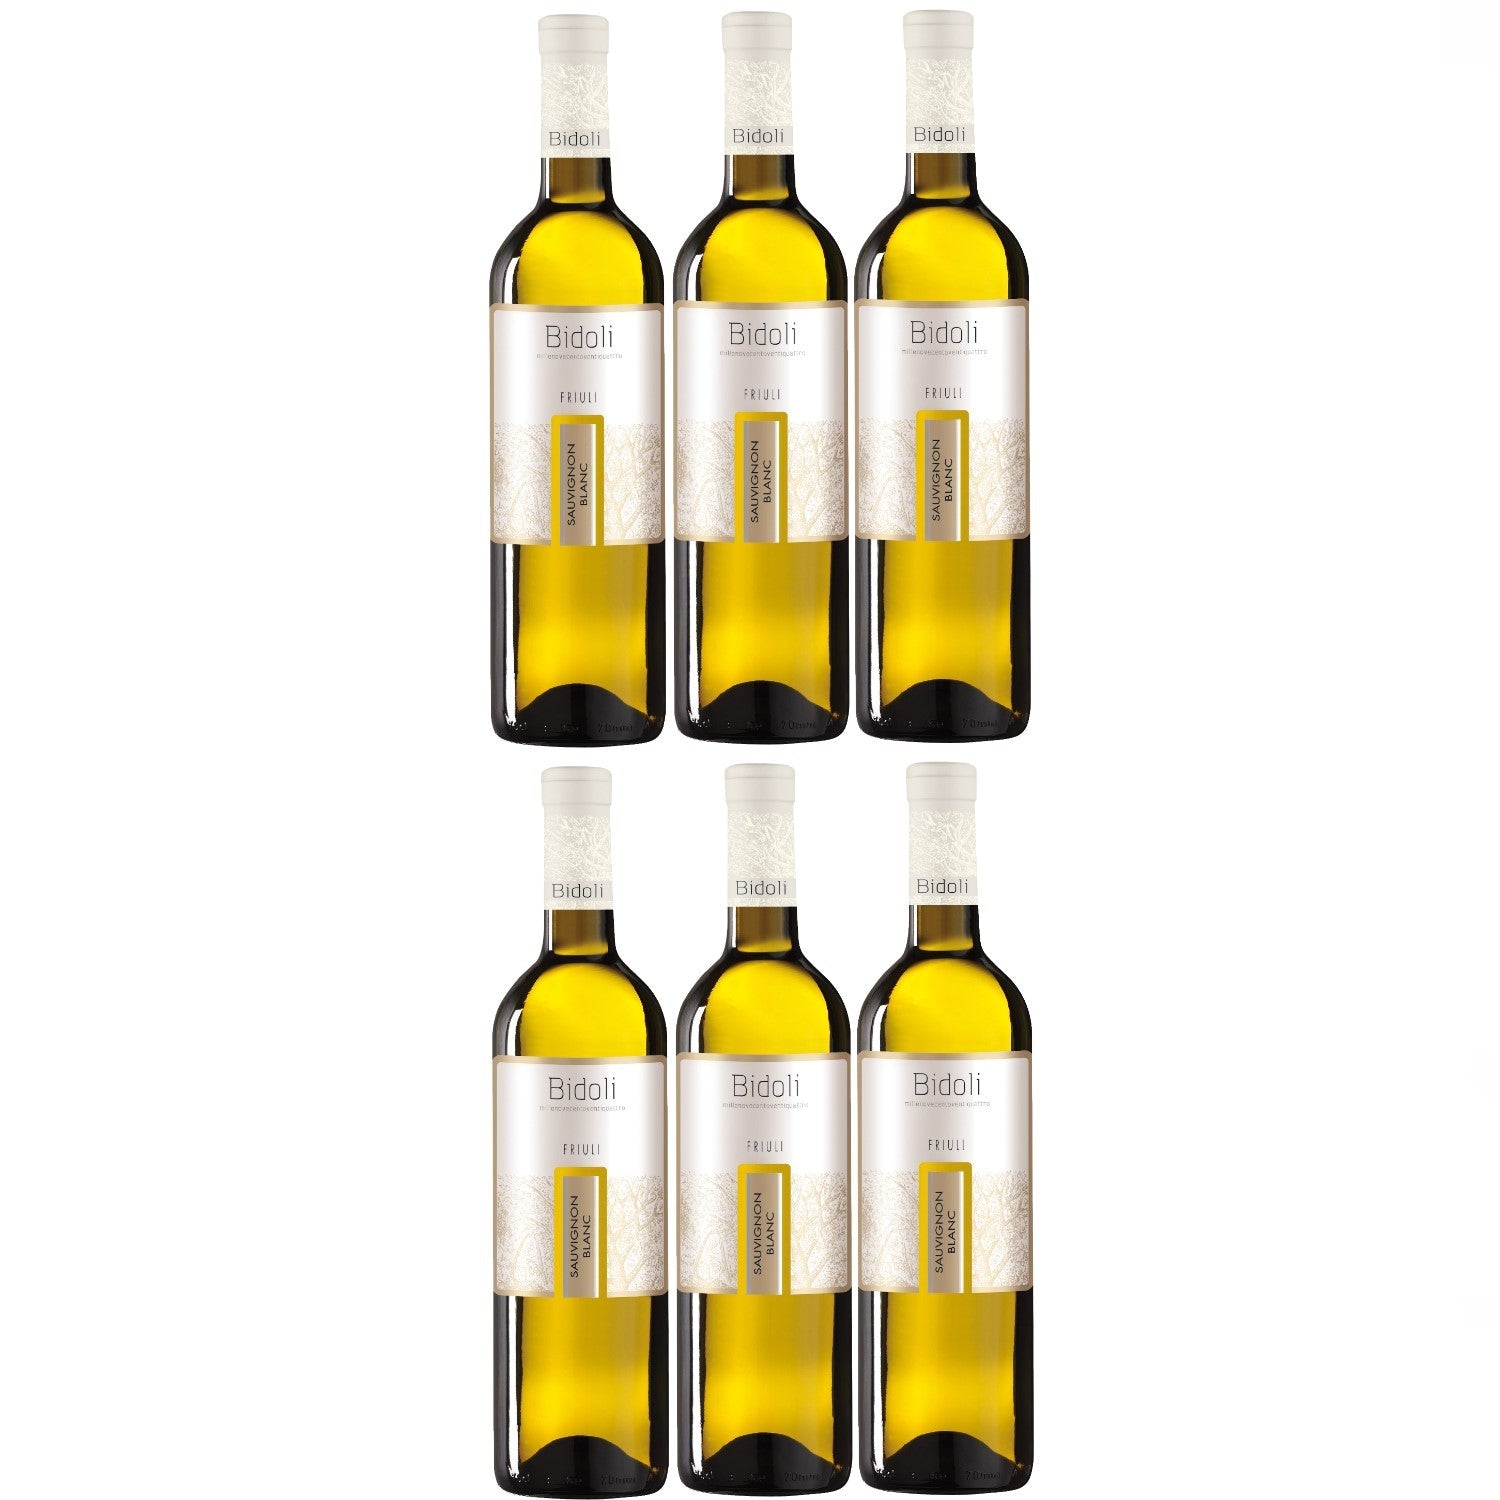 Bidoli Vini Sauvignon Blanc DOC Friuli Grave Weißwein Wein trocken Italien (6 x 0.75l) - Versanel -